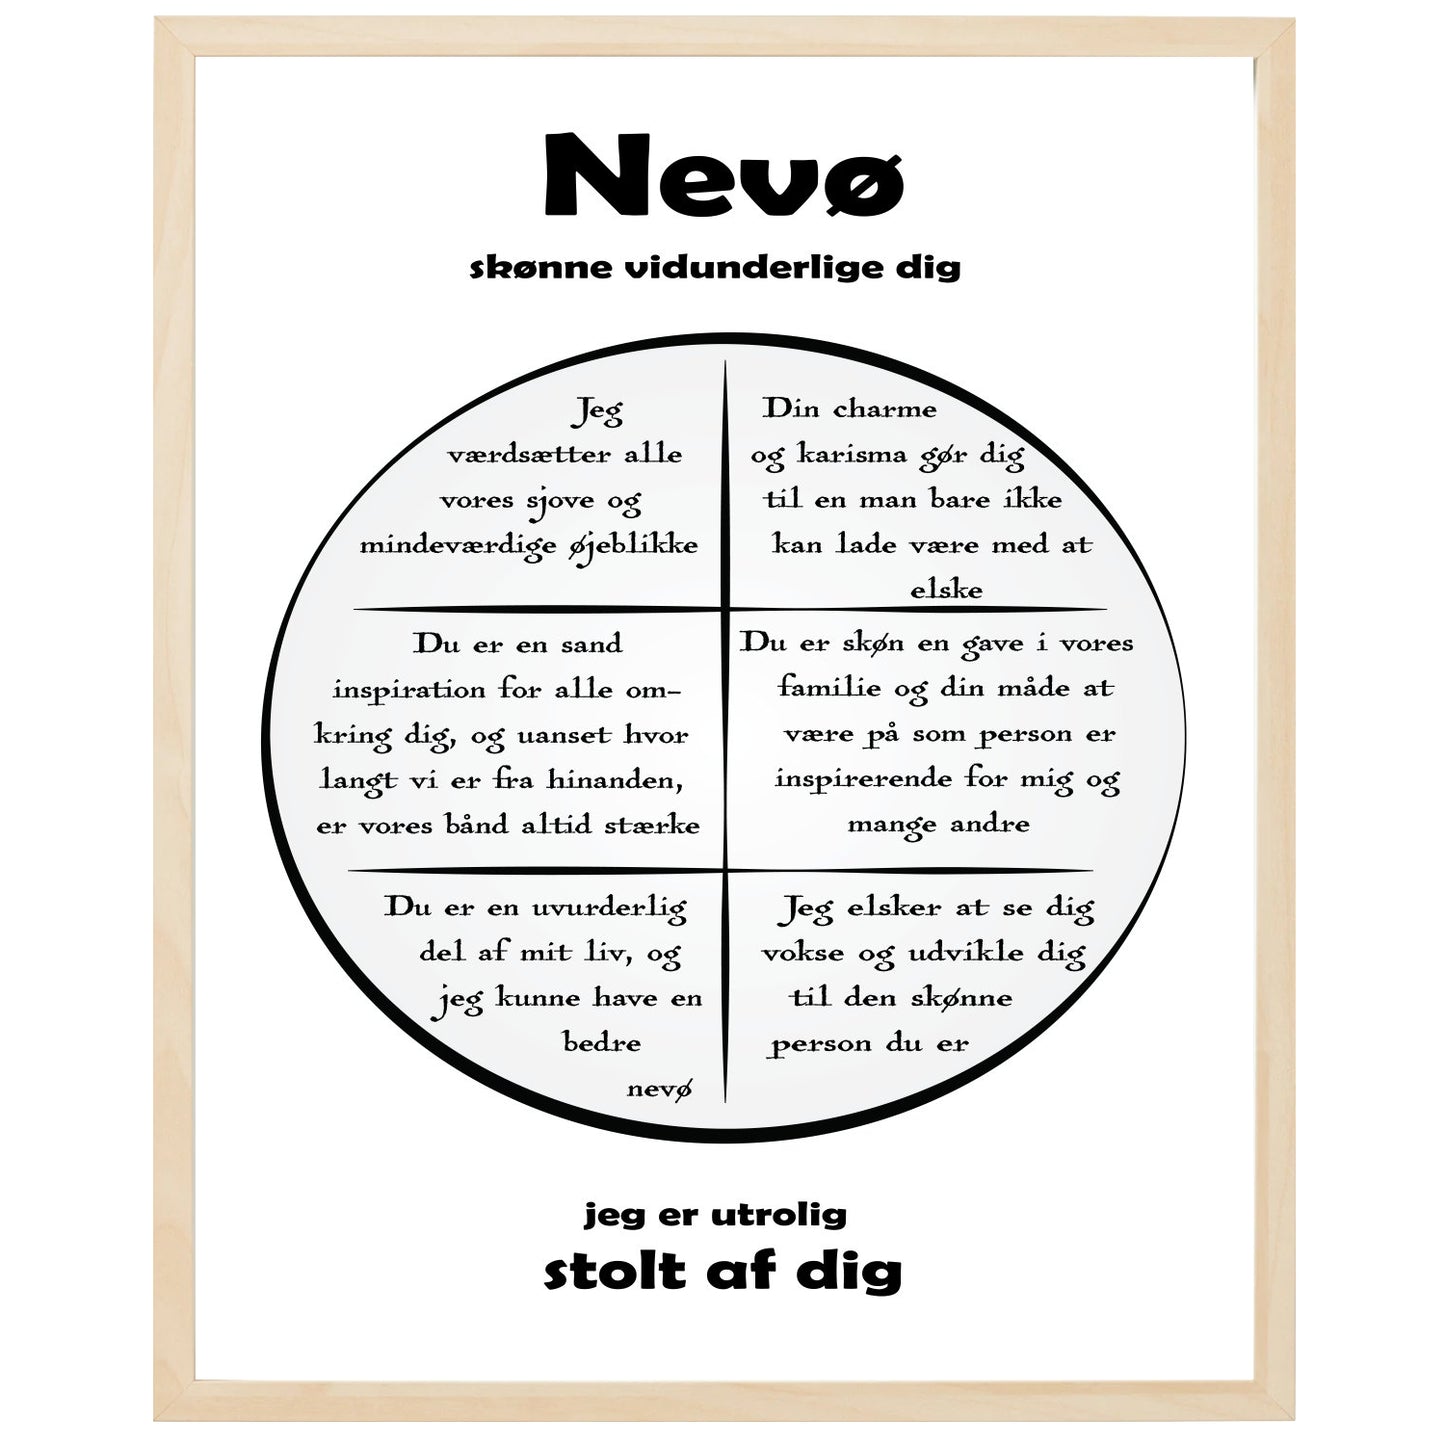 En plakat med overskriften Nevø, en rustik cirkel og indeni cirklen mange positive sætninger som beskriver en Nevø